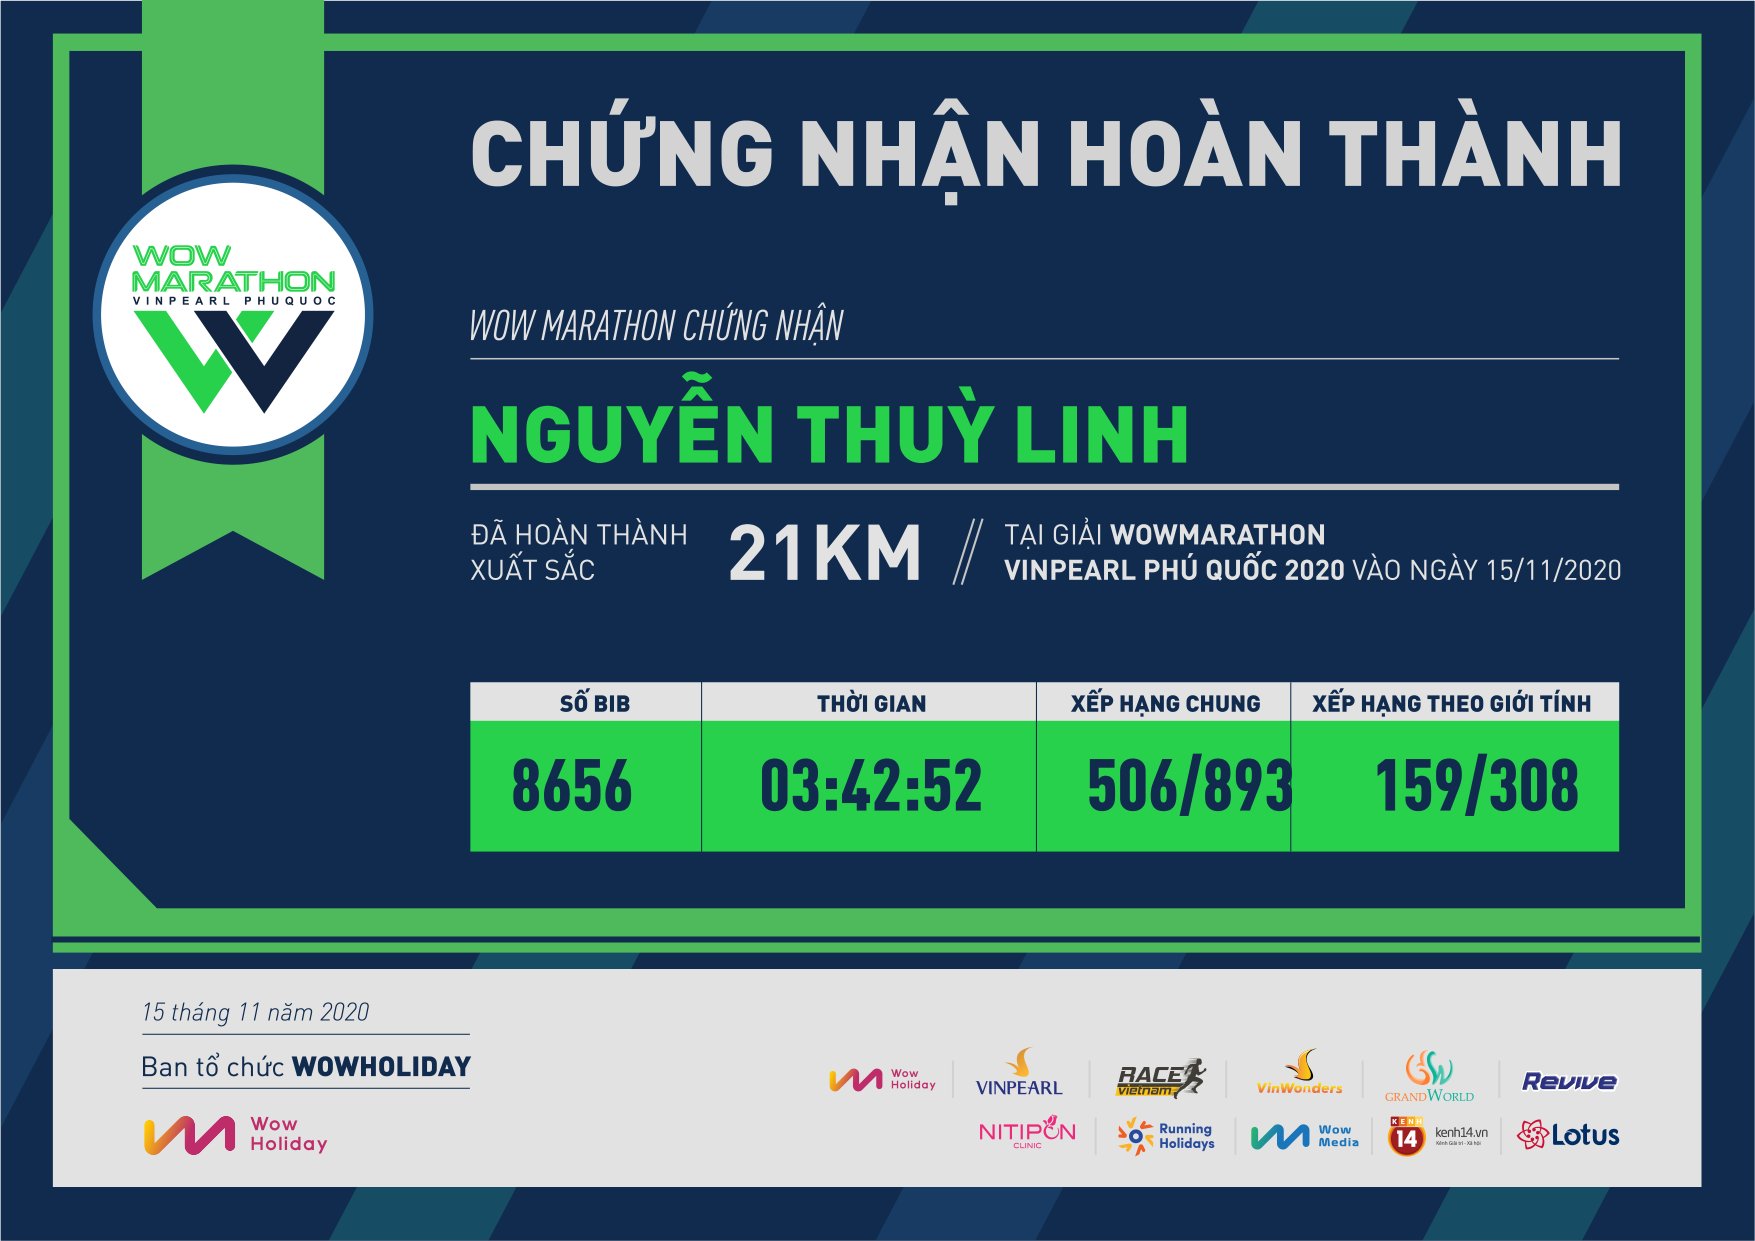 8656 - Nguyễn Thuỳ Linh